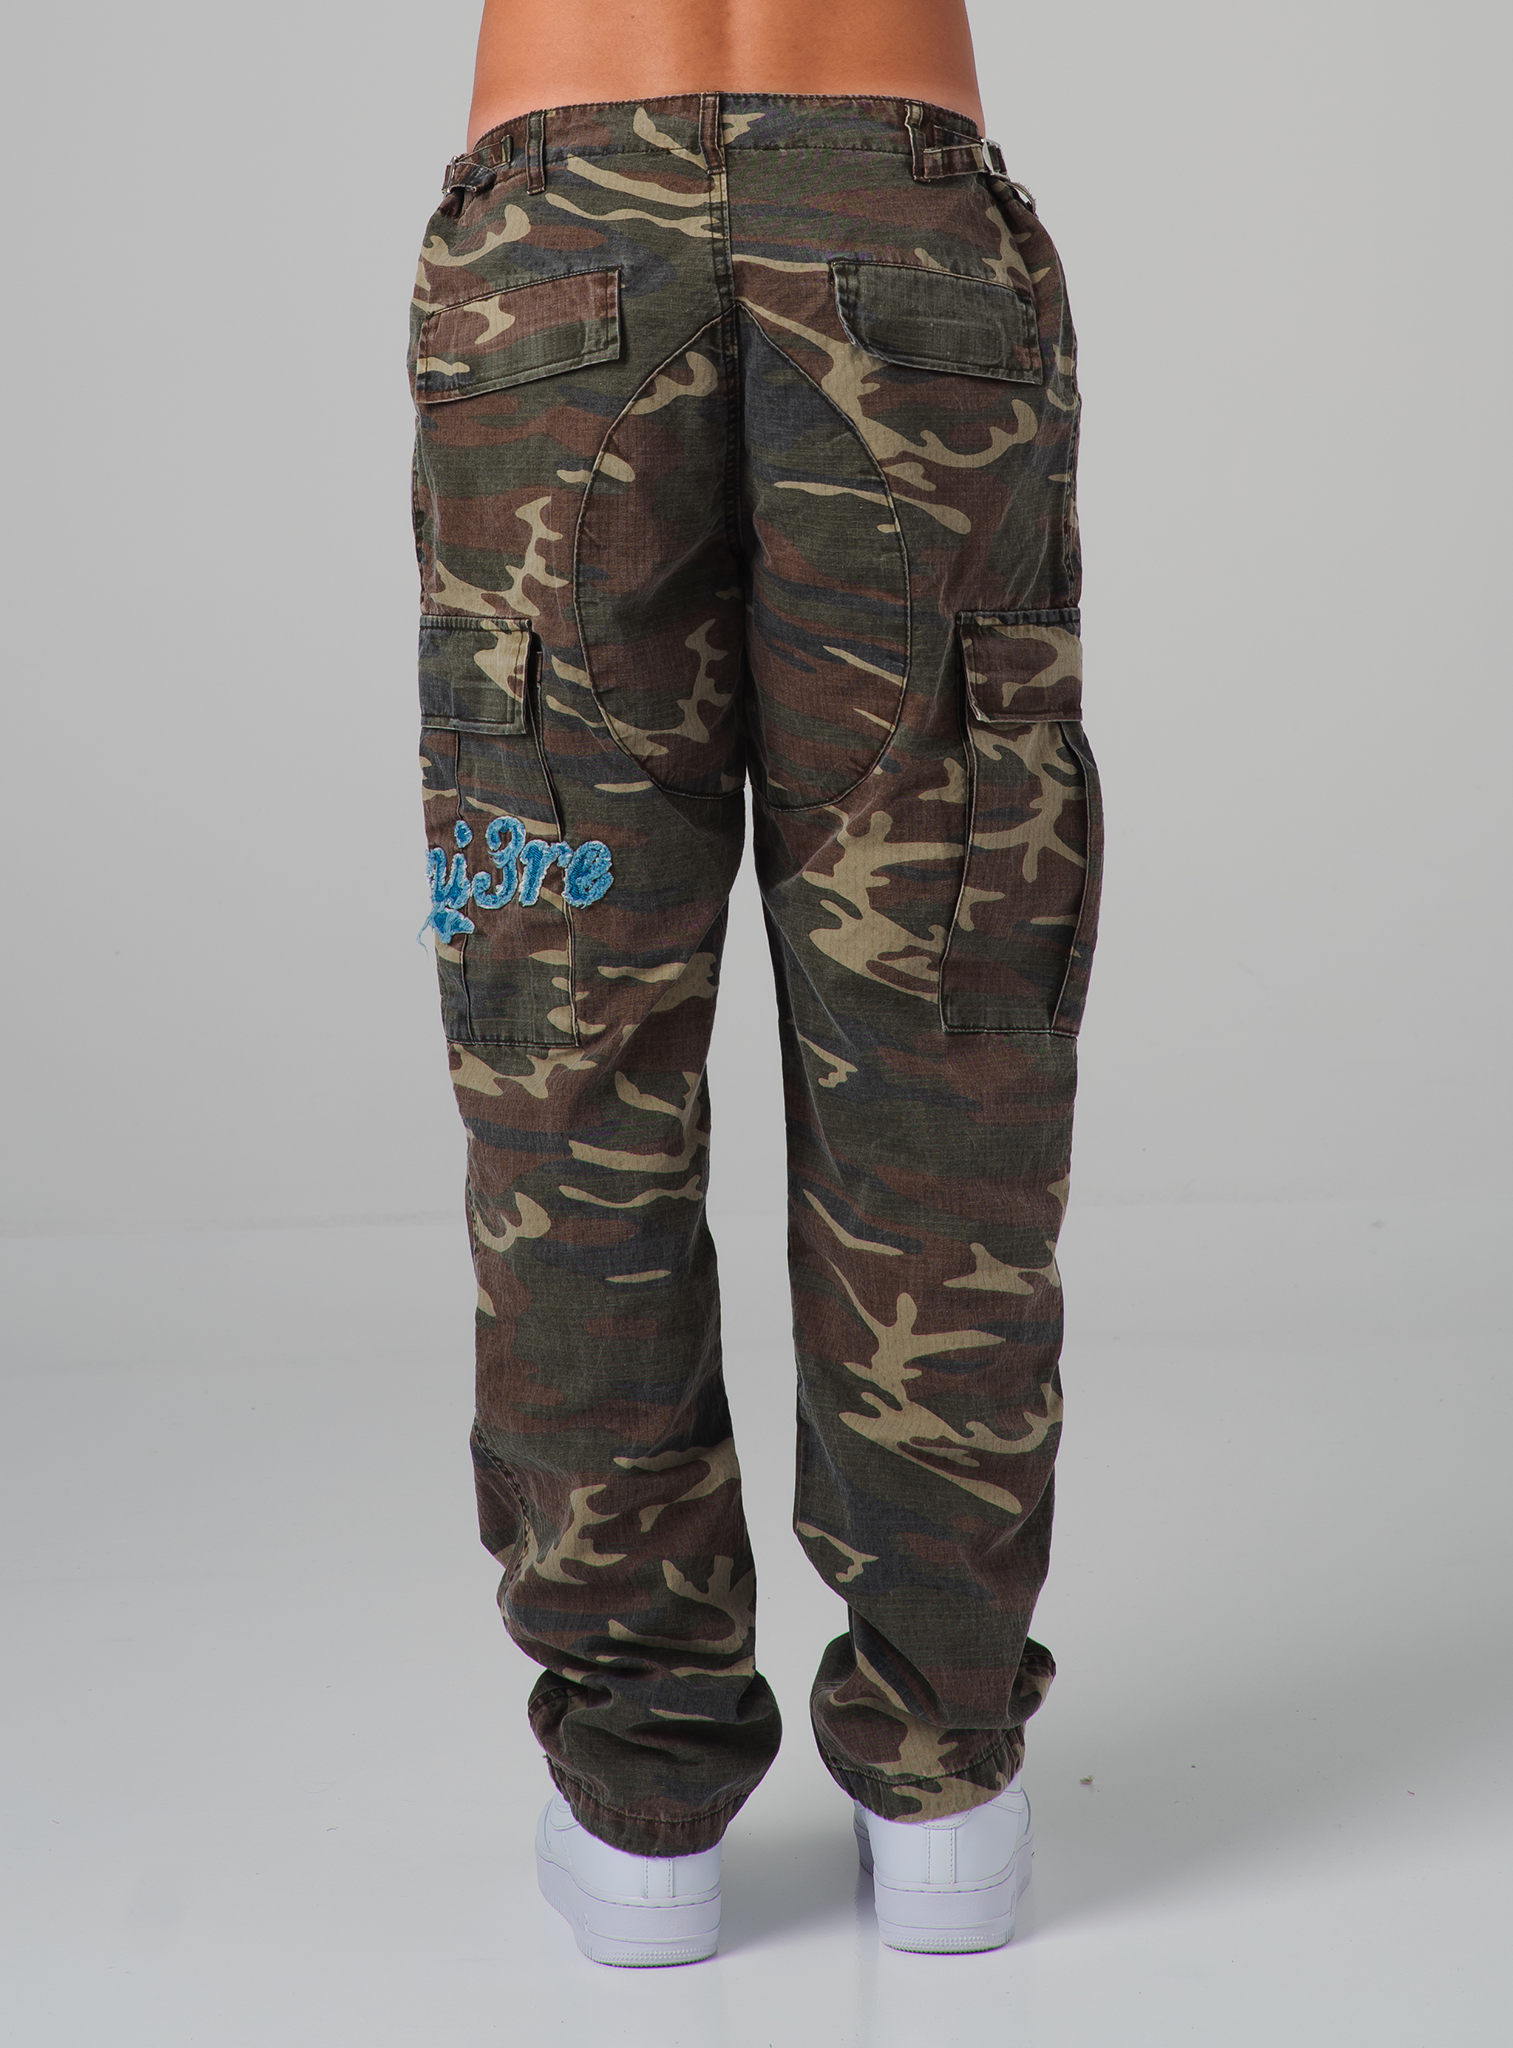 Khaki Camouflage Skinny Jeans. Denim | PrettyLittleThing